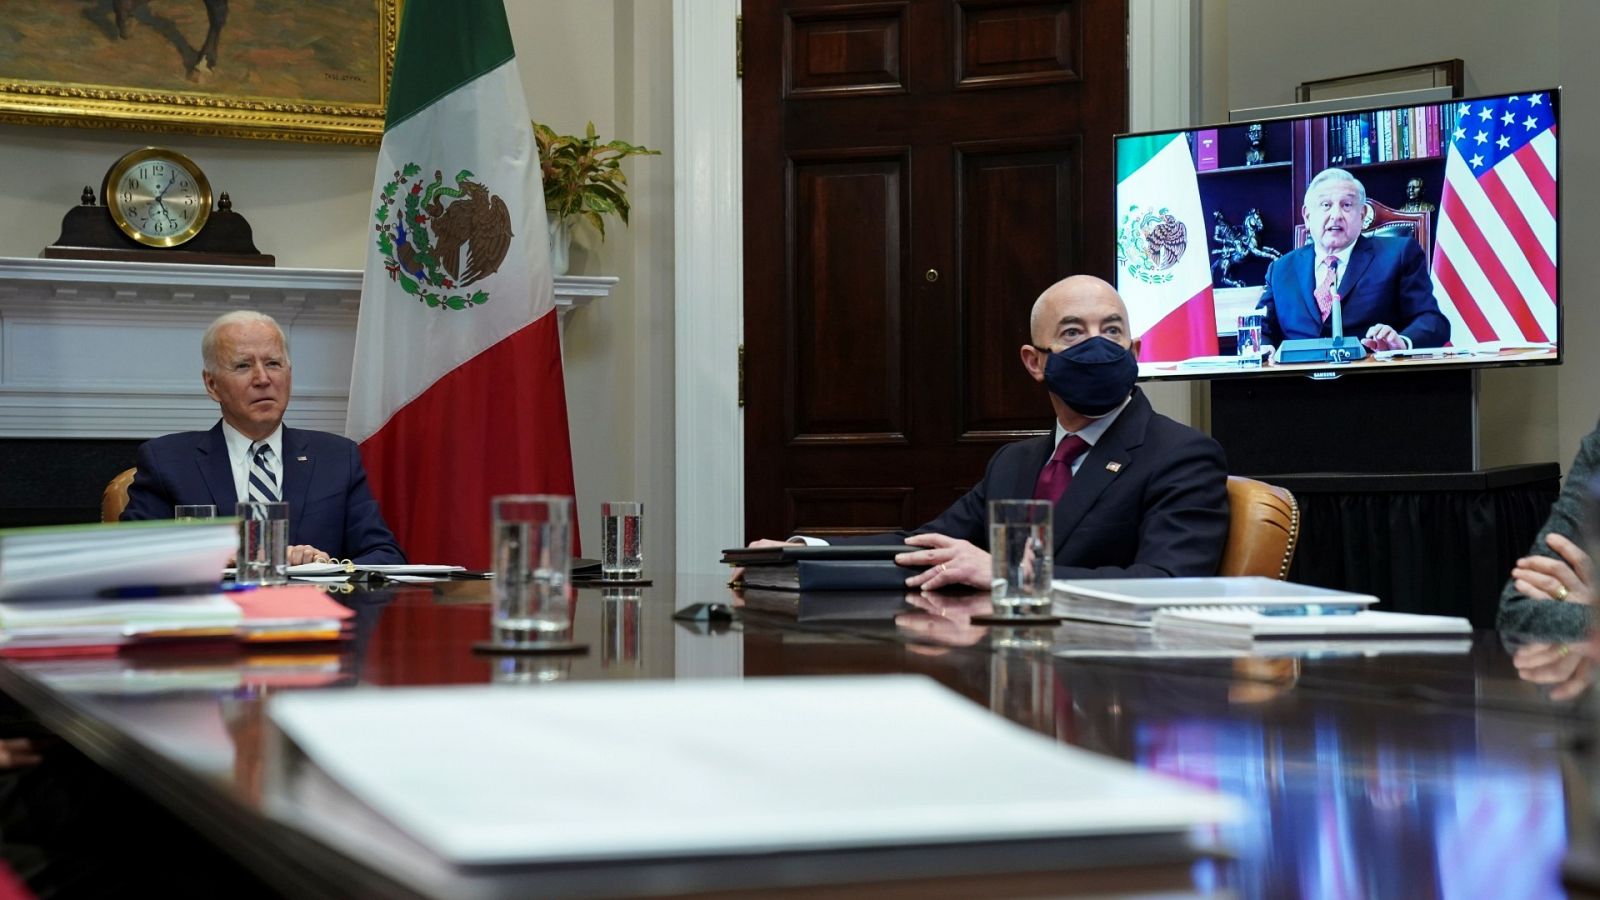 Biden asegura que tratará a México como un "igual" tras su reunión con López Obrador